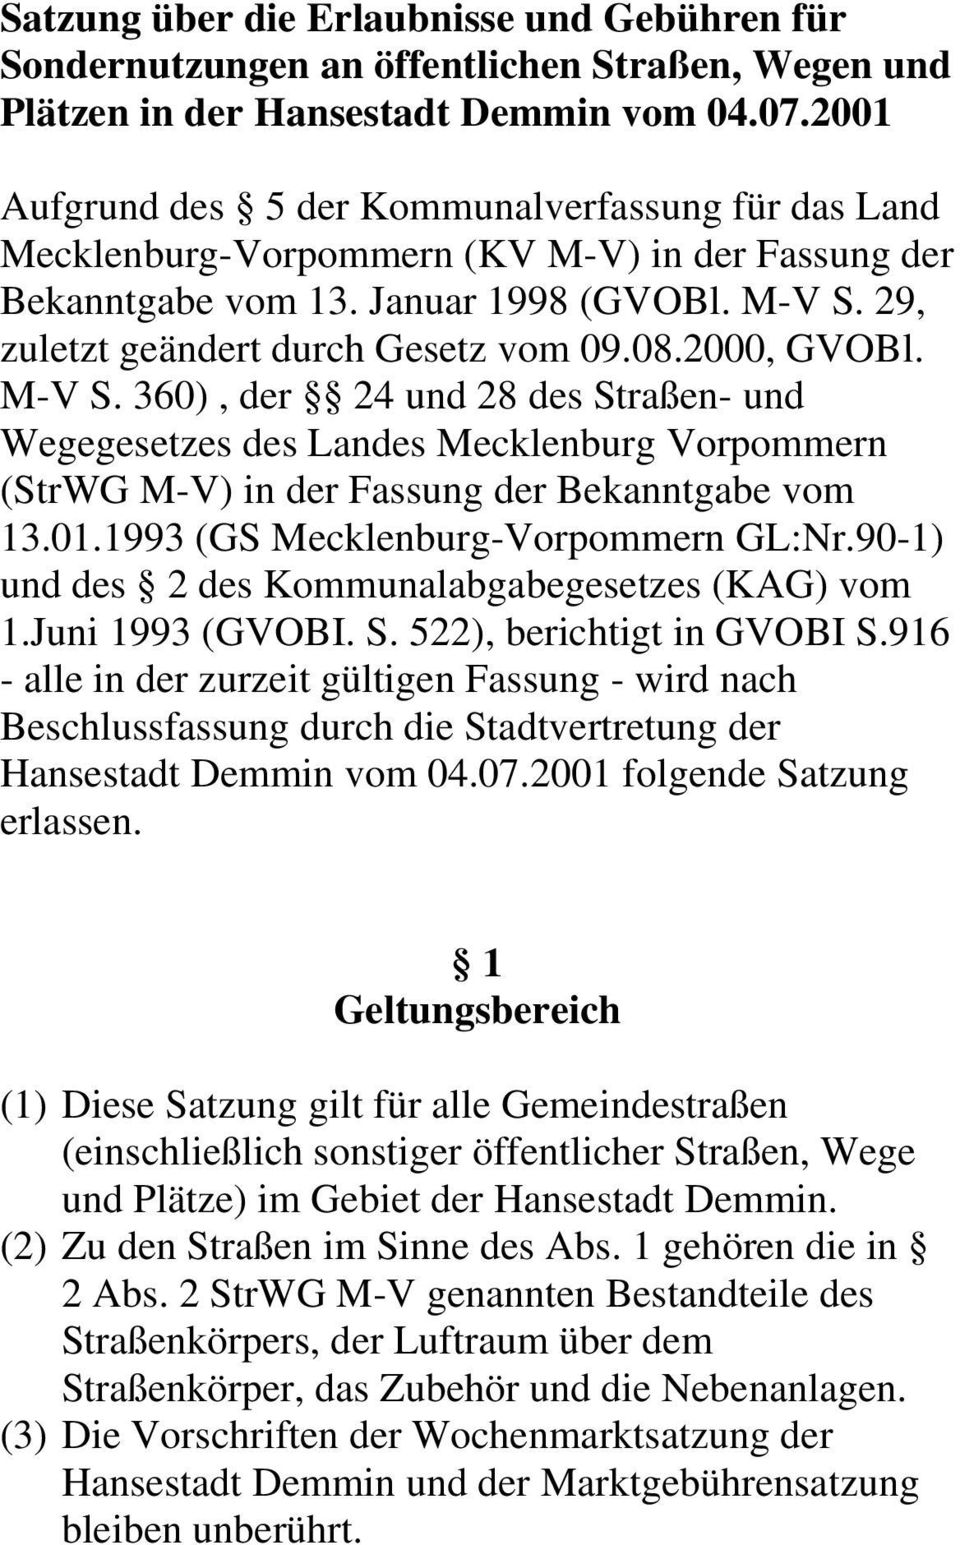 2000, GVOBl. M-V S. 360), der 24 und 28 des Straßen- und Wegegesetzes des Landes Mecklenburg Vorpommern (StrWG M-V) in der Fassung der Bekanntgabe vom 13.01.1993 (GS Mecklenburg-Vorpommern GL:Nr.